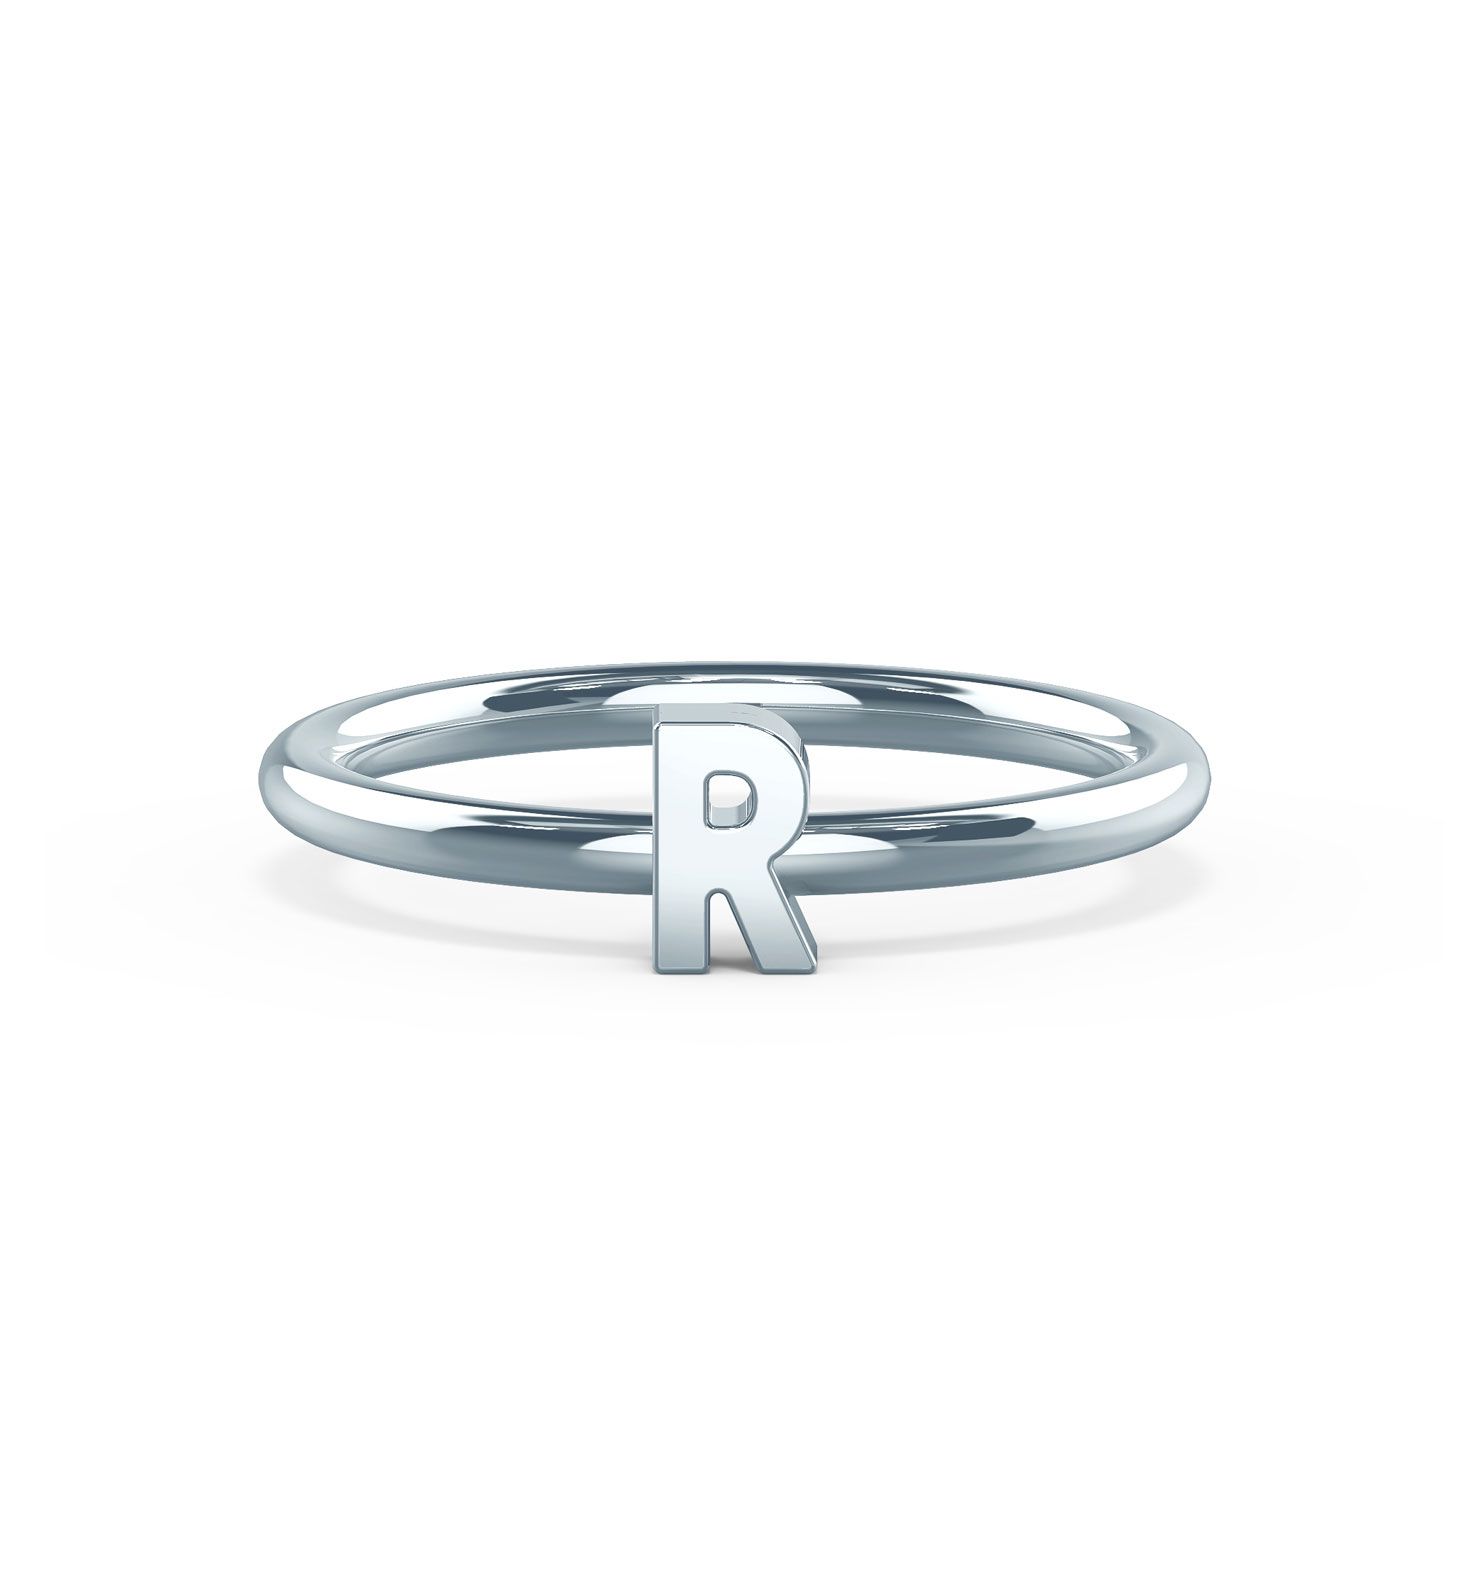 საუკეთესო საჩუქრები, საჩუქრების იდეები ქალებისთვის - Tiary Letter Ring